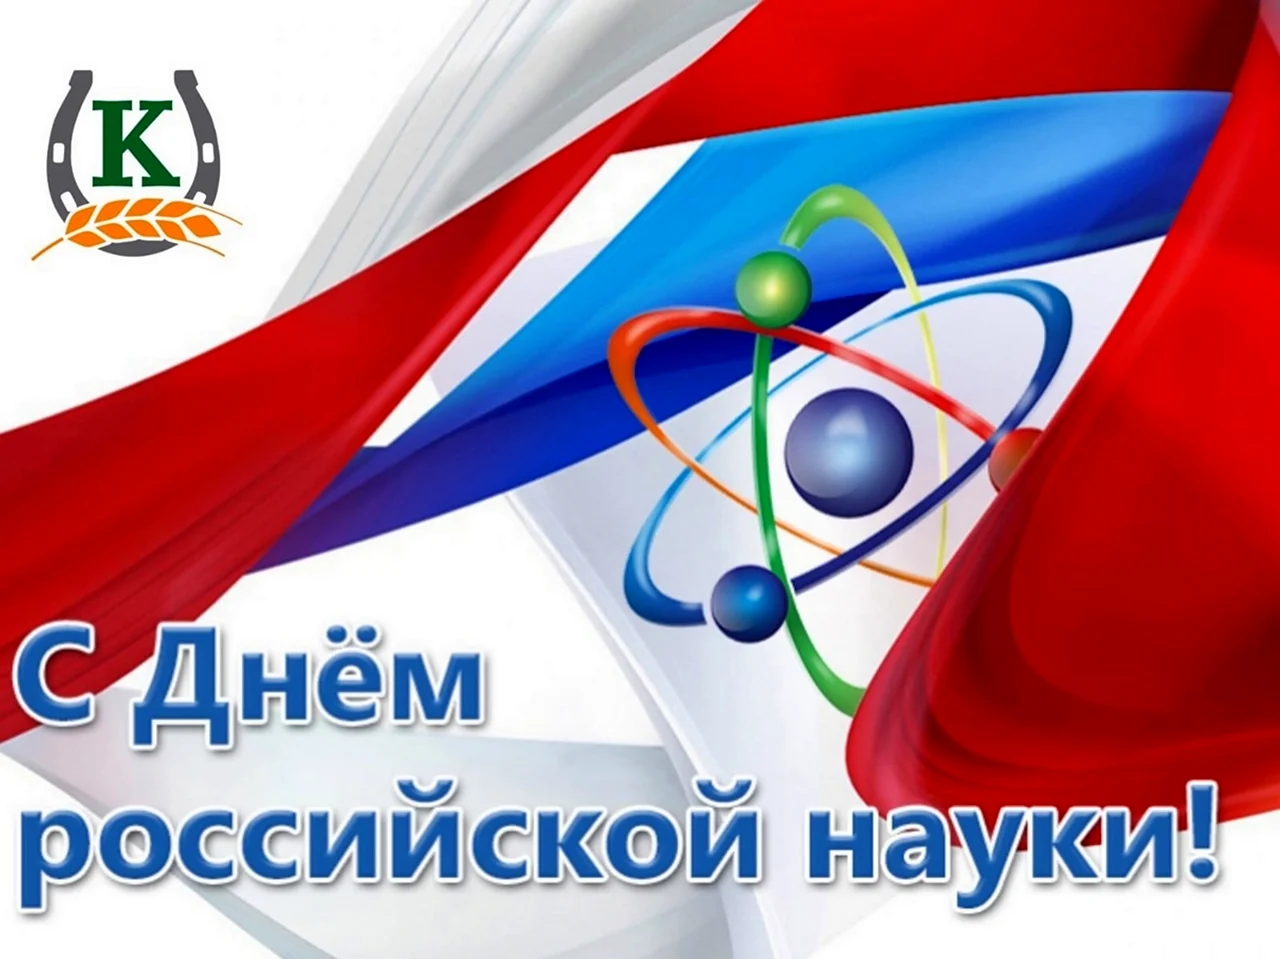 8 Февраля Россия отмечает день науки. Поздравление